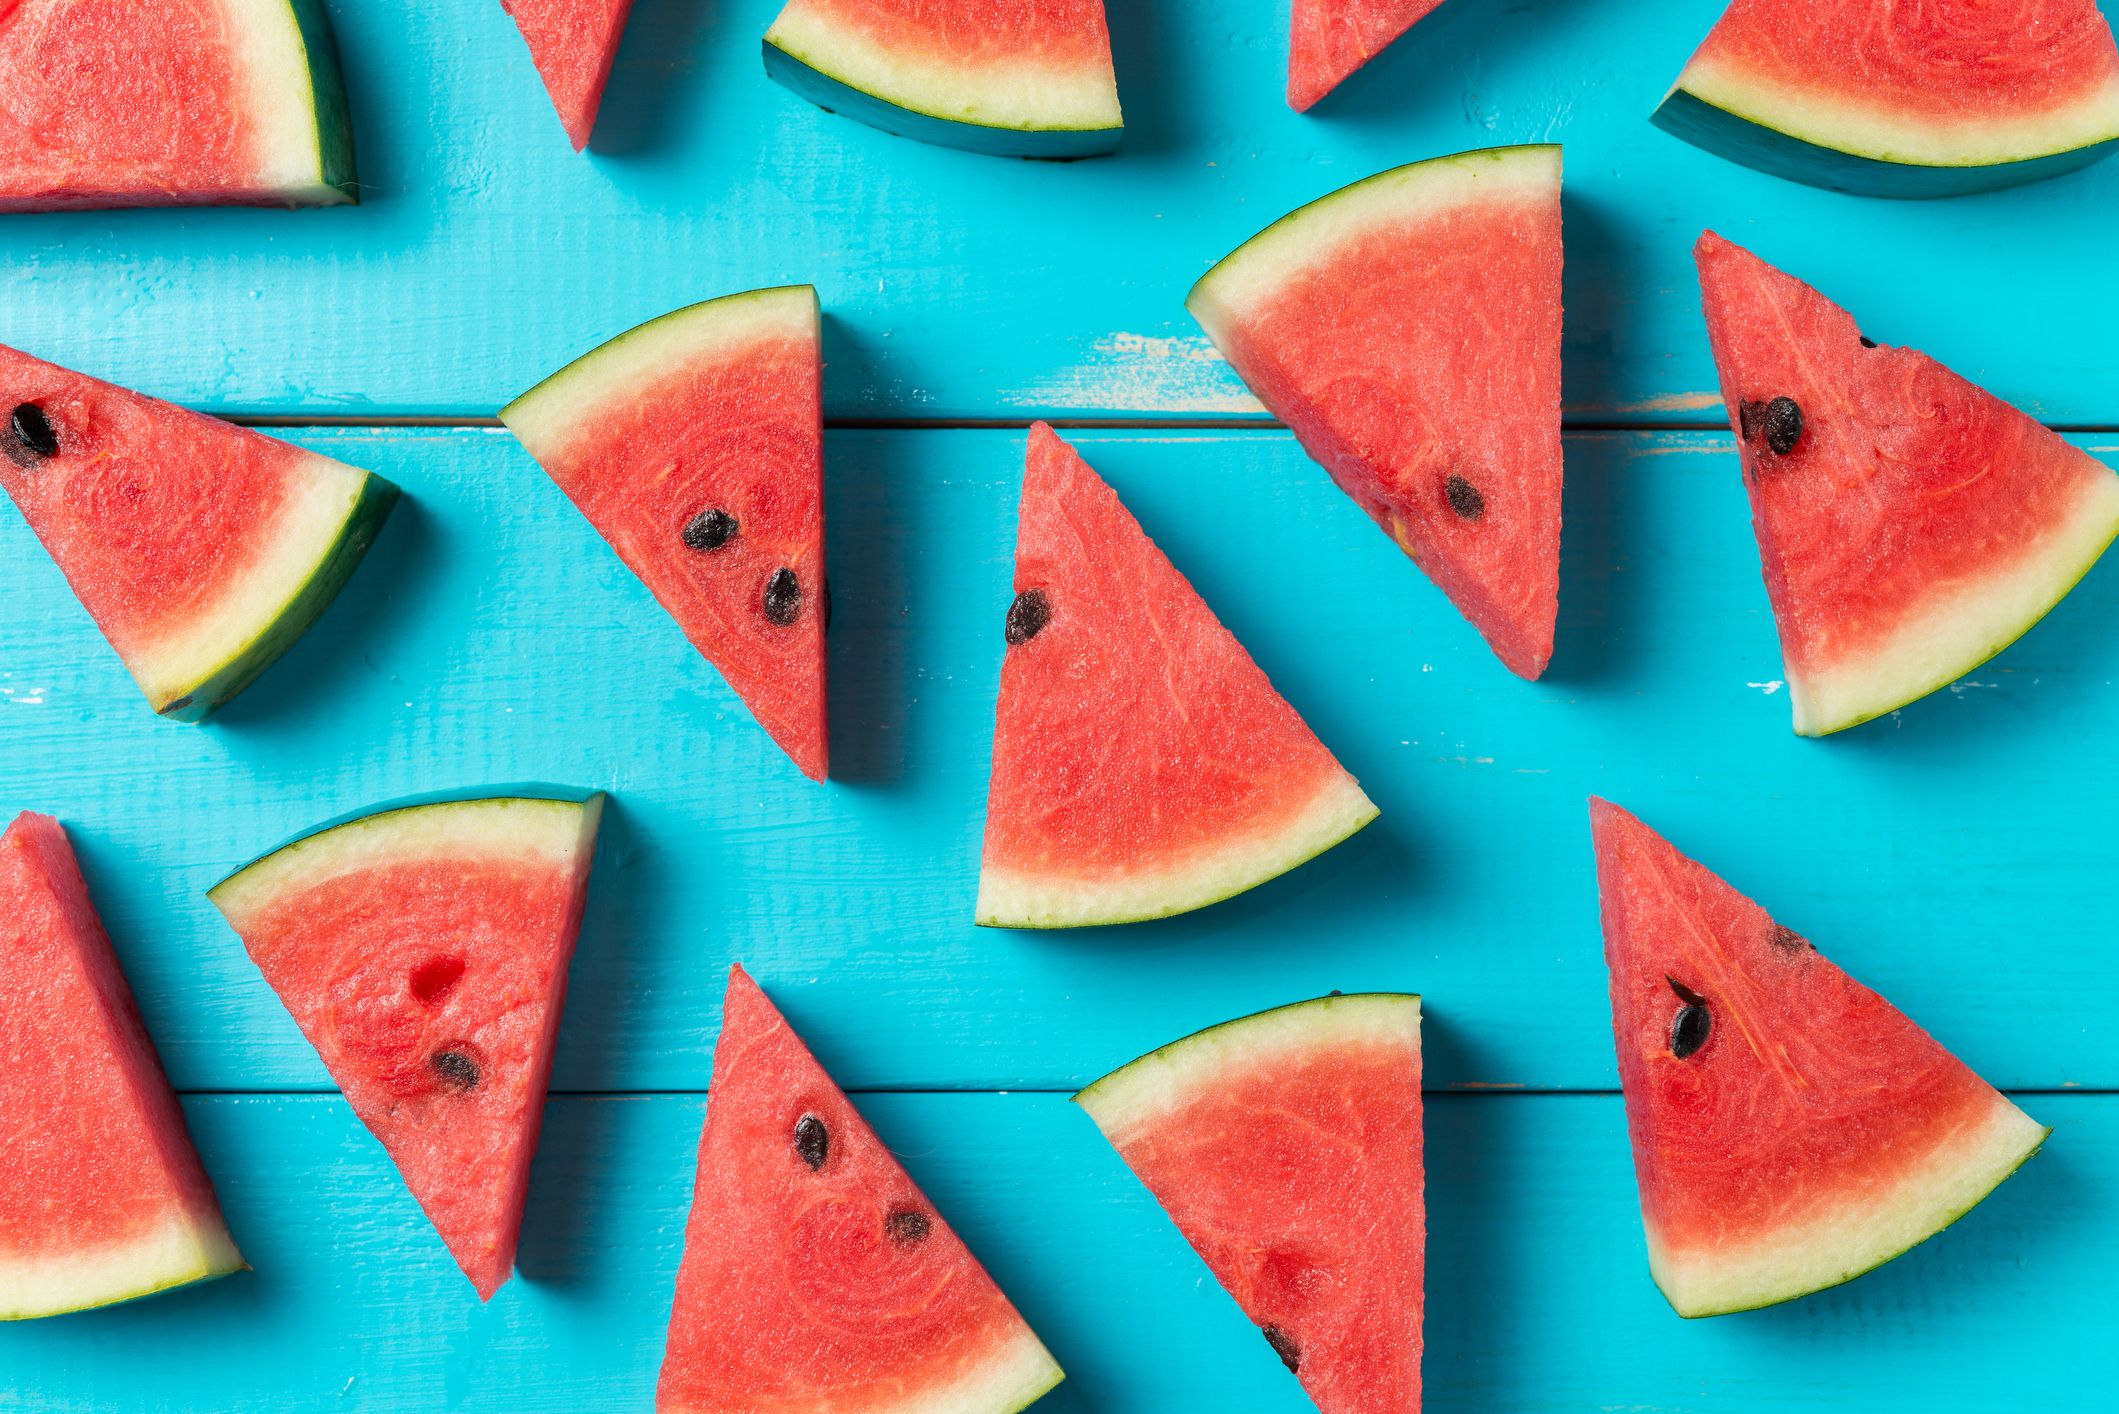 Bei hohen Temperaturen sollten wasserreiche Lebensmittel, etwa Wassermelone, verzehrt werden